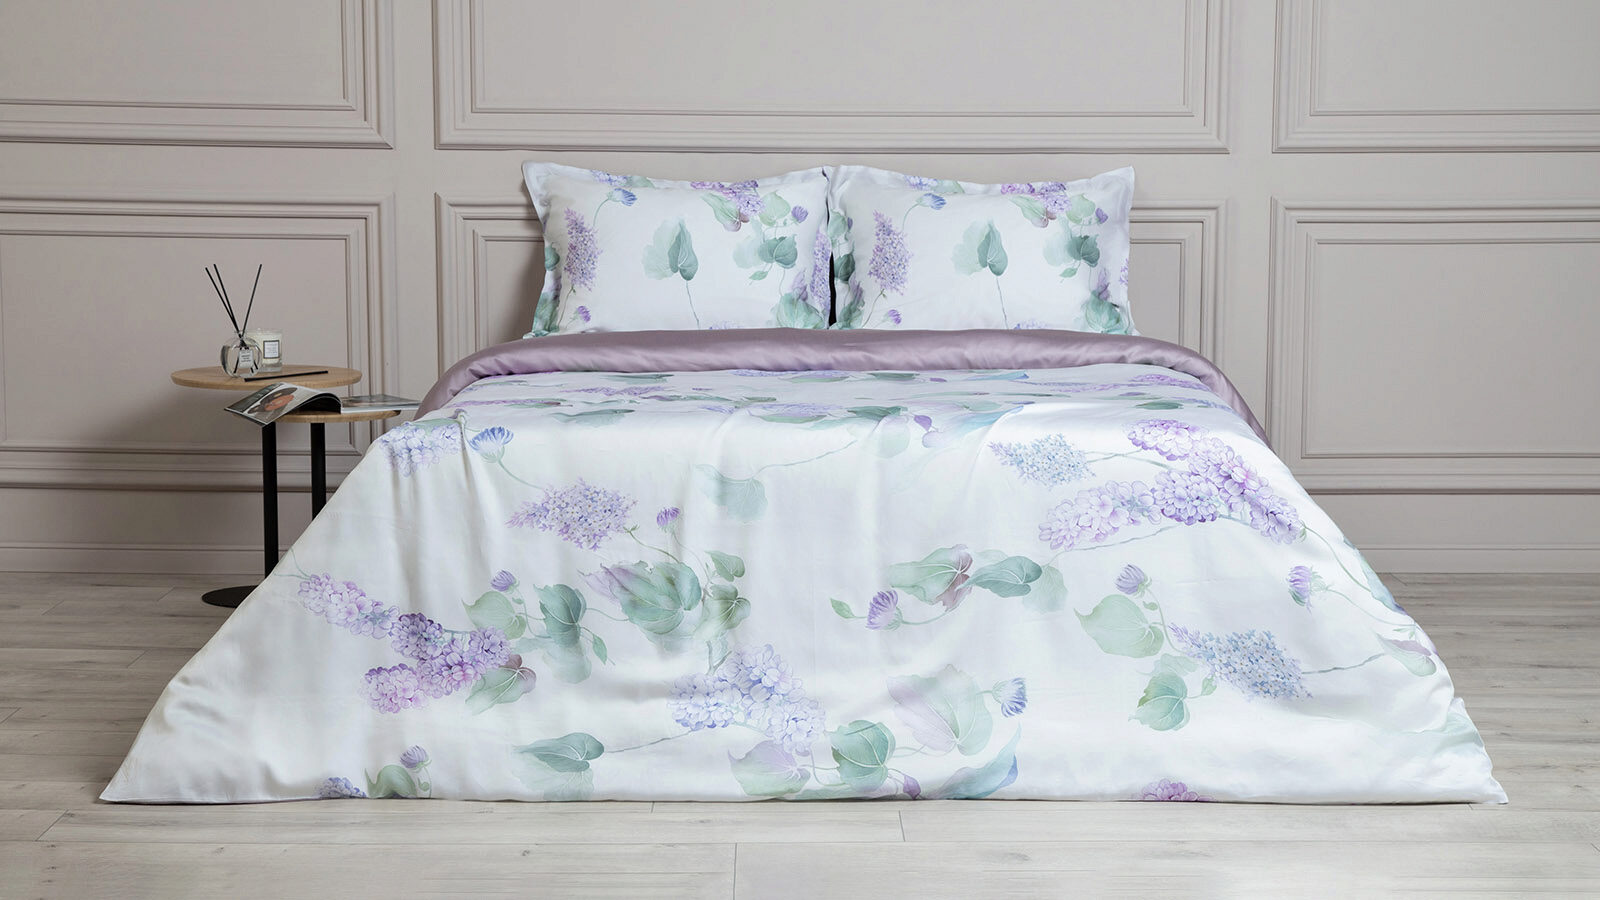 Комплект постельного белья Trend Tencel Lilac комплект одеяло beat подушка sky комплект постельного белья comfort cotton светло серый